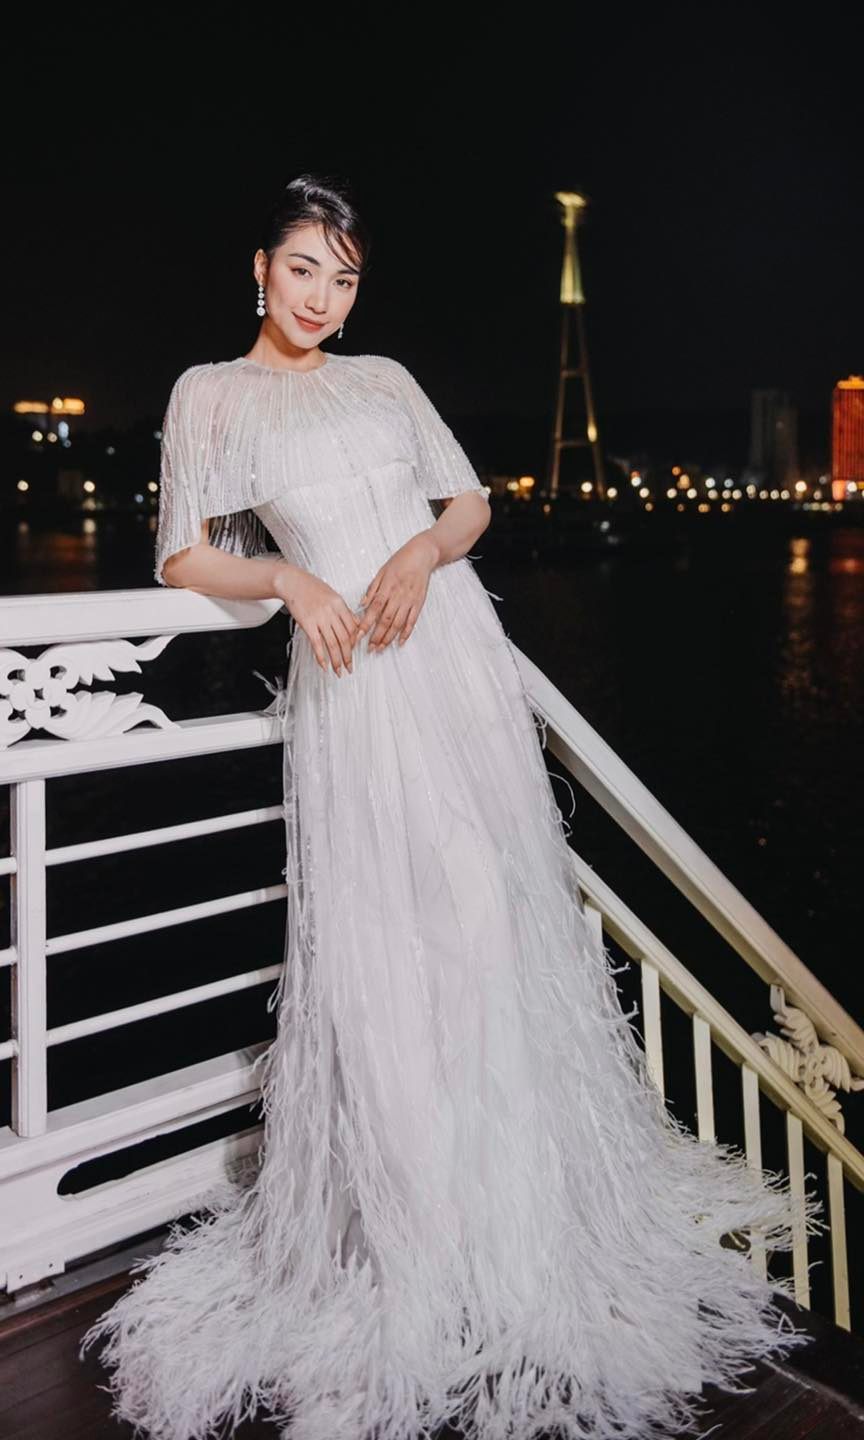  
Trên trang cá nhân, Hòa Minzy chia sẻ hình ảnh thả dáng trong đầm lông vũ khi tham dự một sự kiện mới đây. (Ảnh: Hòa Minzy)